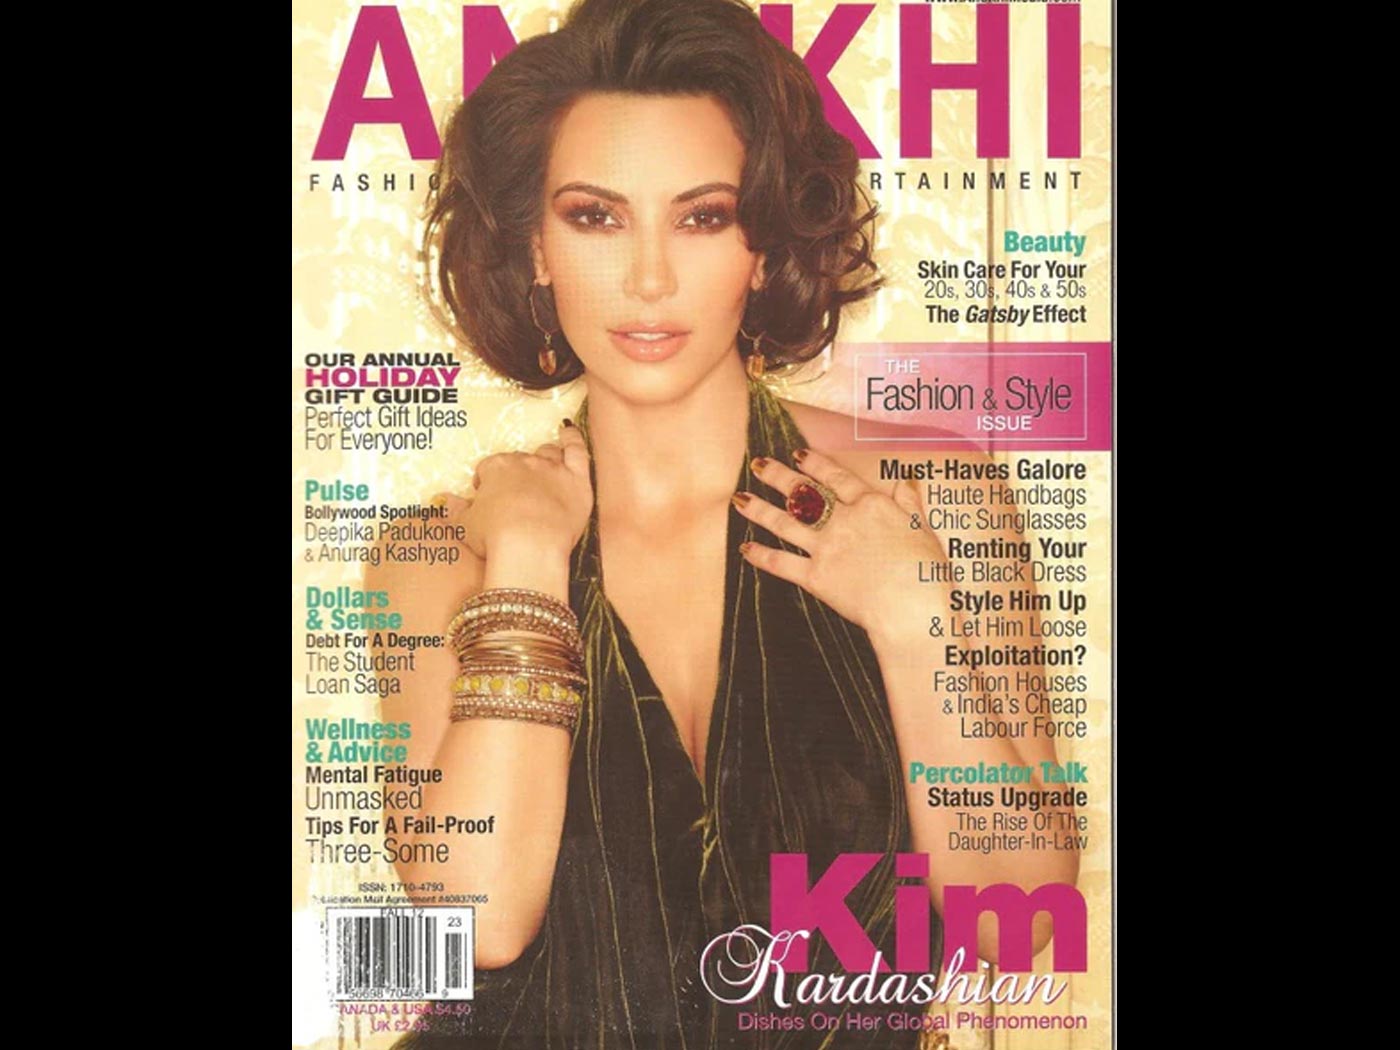 Anokhi Magazine - October Fashion & Style issue